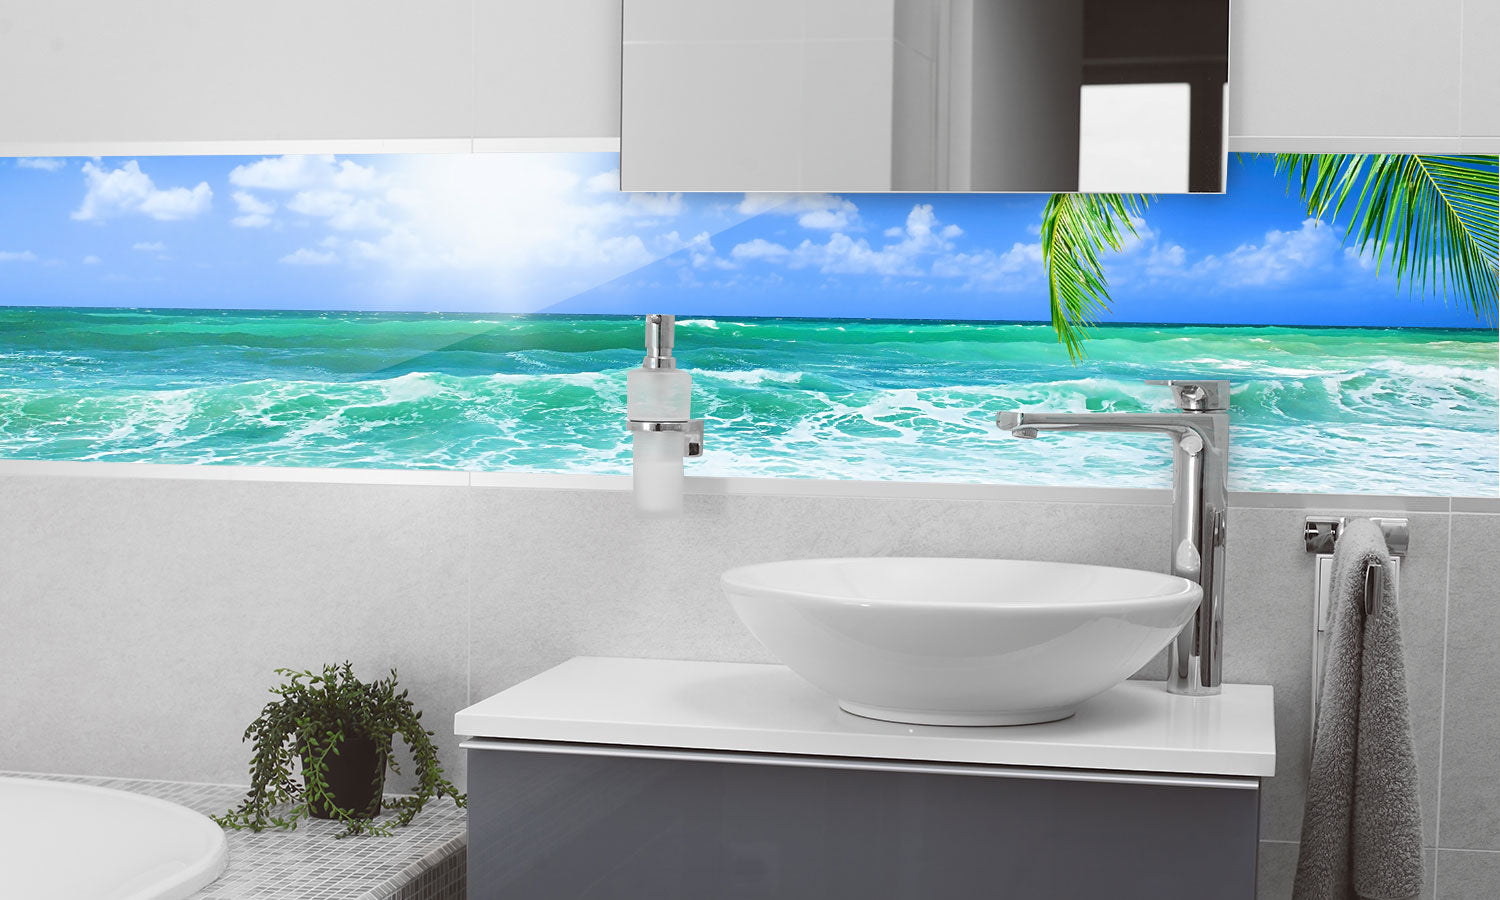 Kuhinjski paneli Beautiful beach - Stekleni / PVC plošče / Pleksi steklo - s tiskom za kuhinjo, Stenske obloge PKU0232 - Life-decor.si